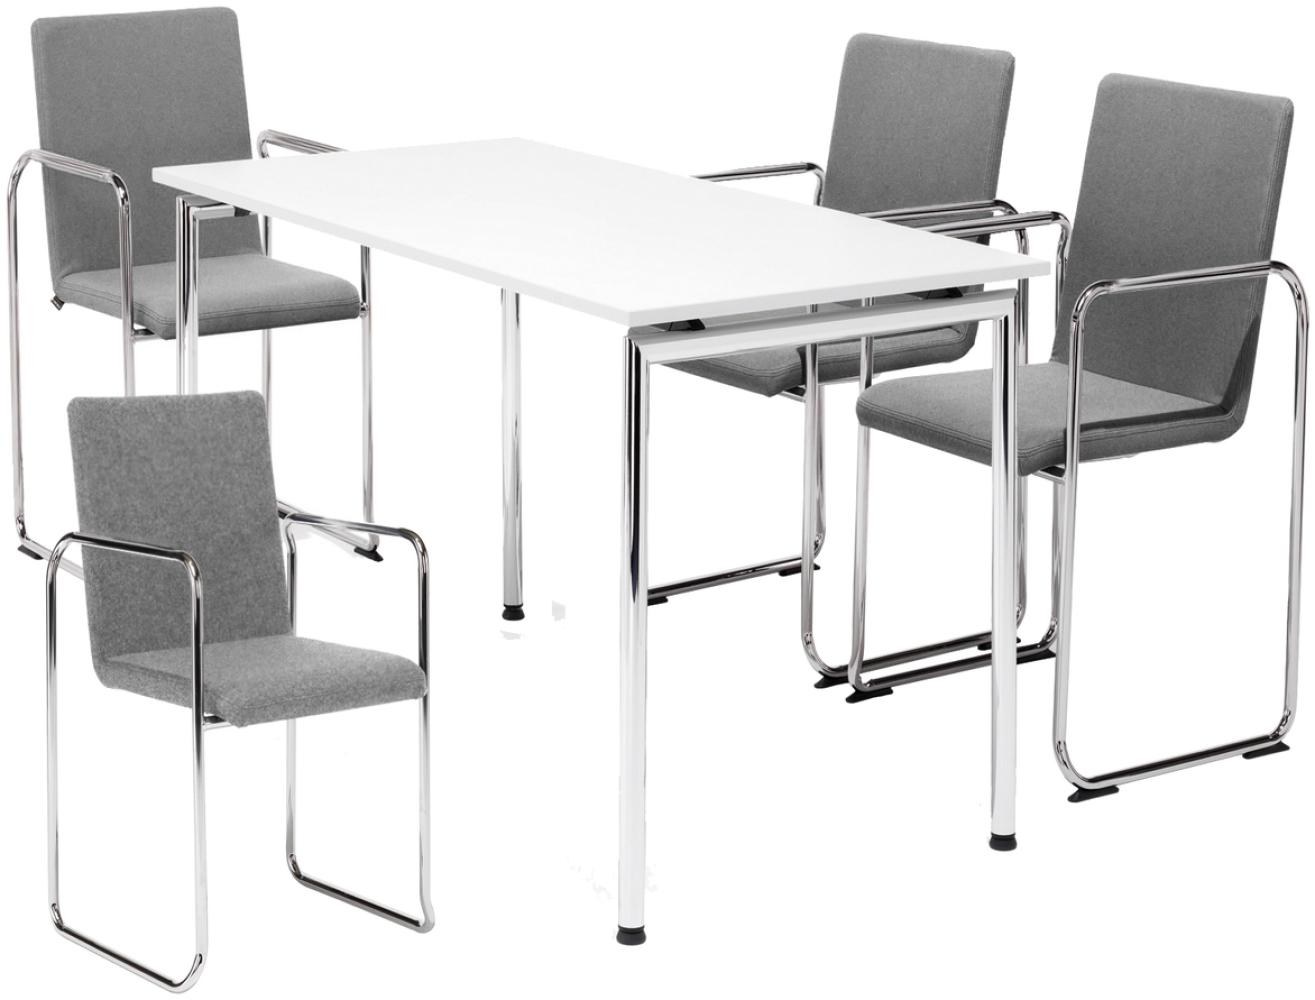 Set Konferenztisch 140cm x 70cm mit 4 Schwingstühlen, Polster Grau Bild 1